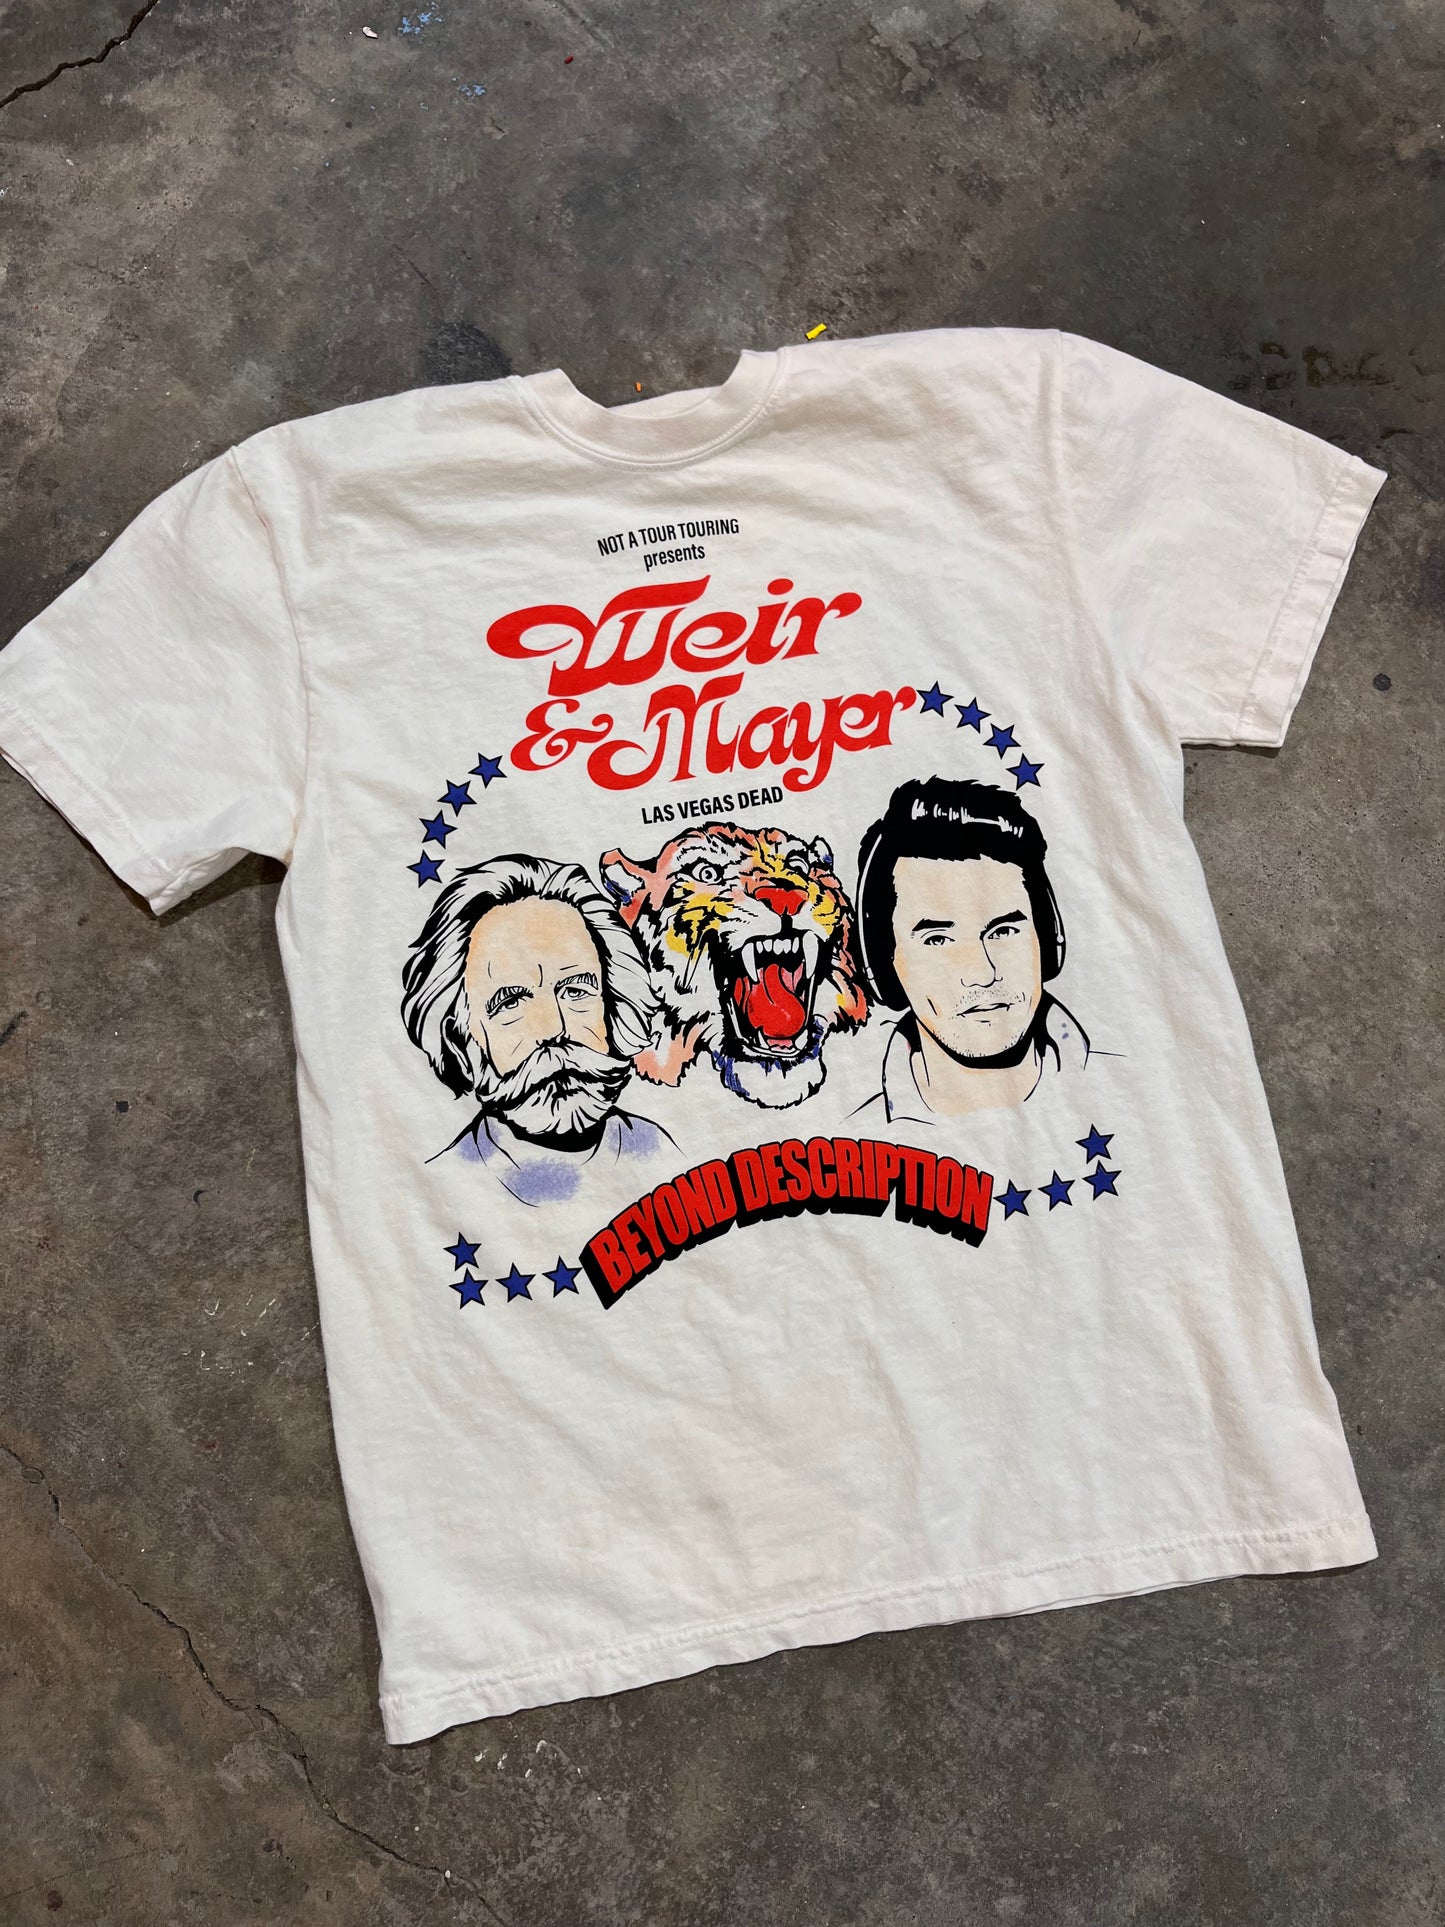 Weir & Mayer T-Shirt